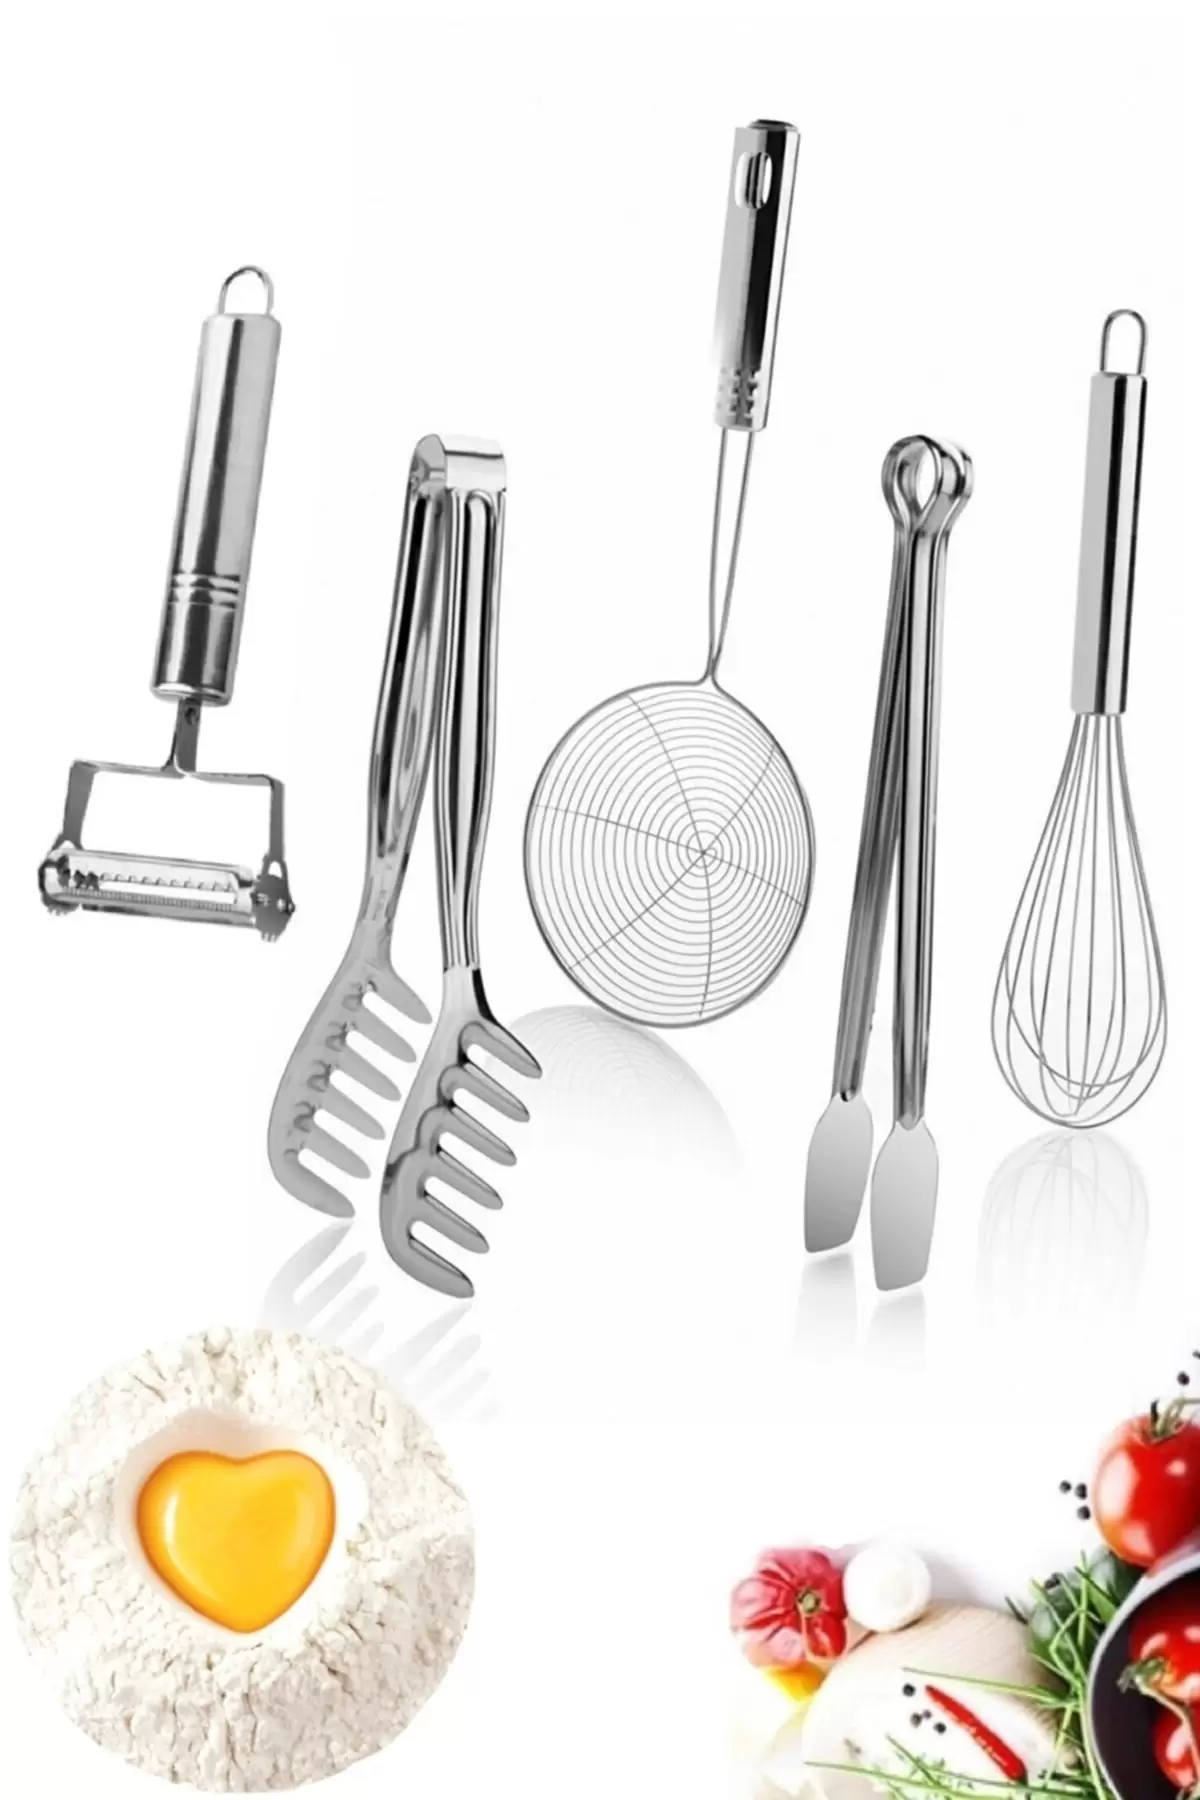 Yemek Hazırlık Pratik Mutfak Gereçleri Seti 5 Parça Mutfak Metal Soyacak Çırpıcı Maşa Kevgir Kepçe